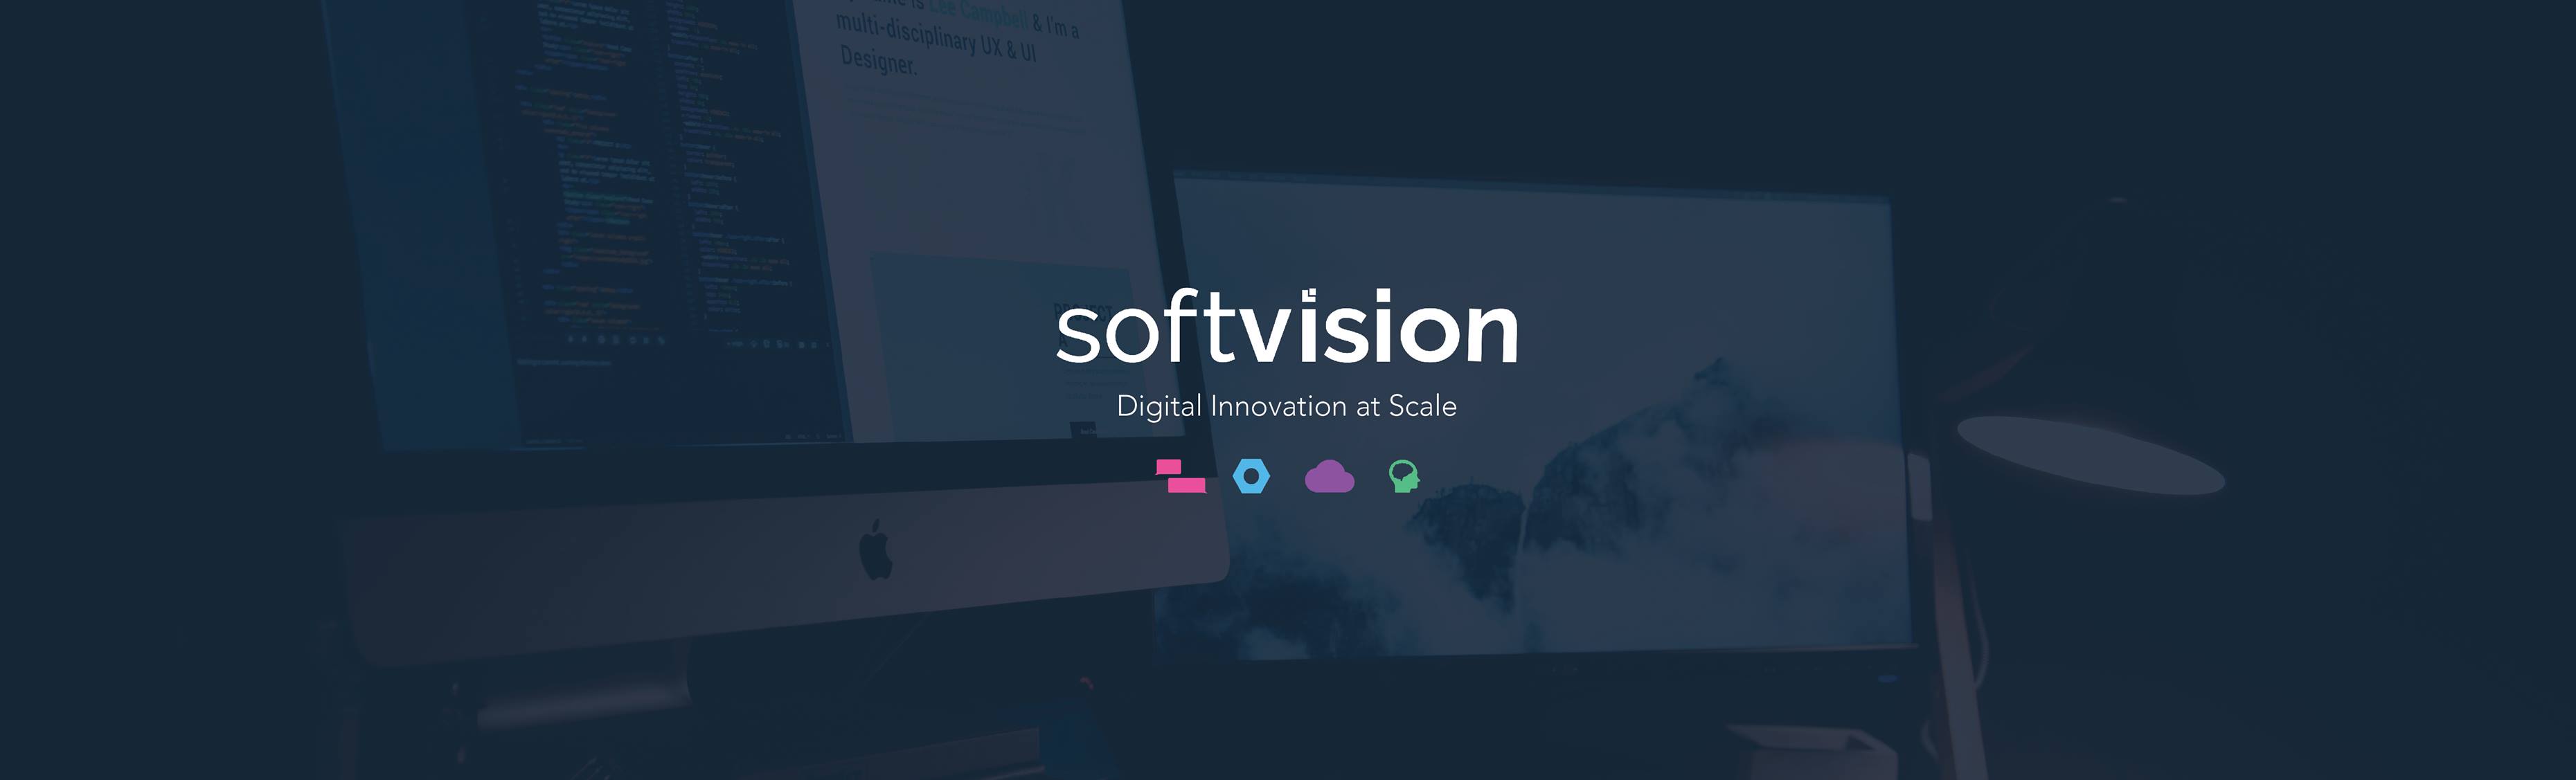 Cognizant Softvision Tech Companies Oakland San Francisco